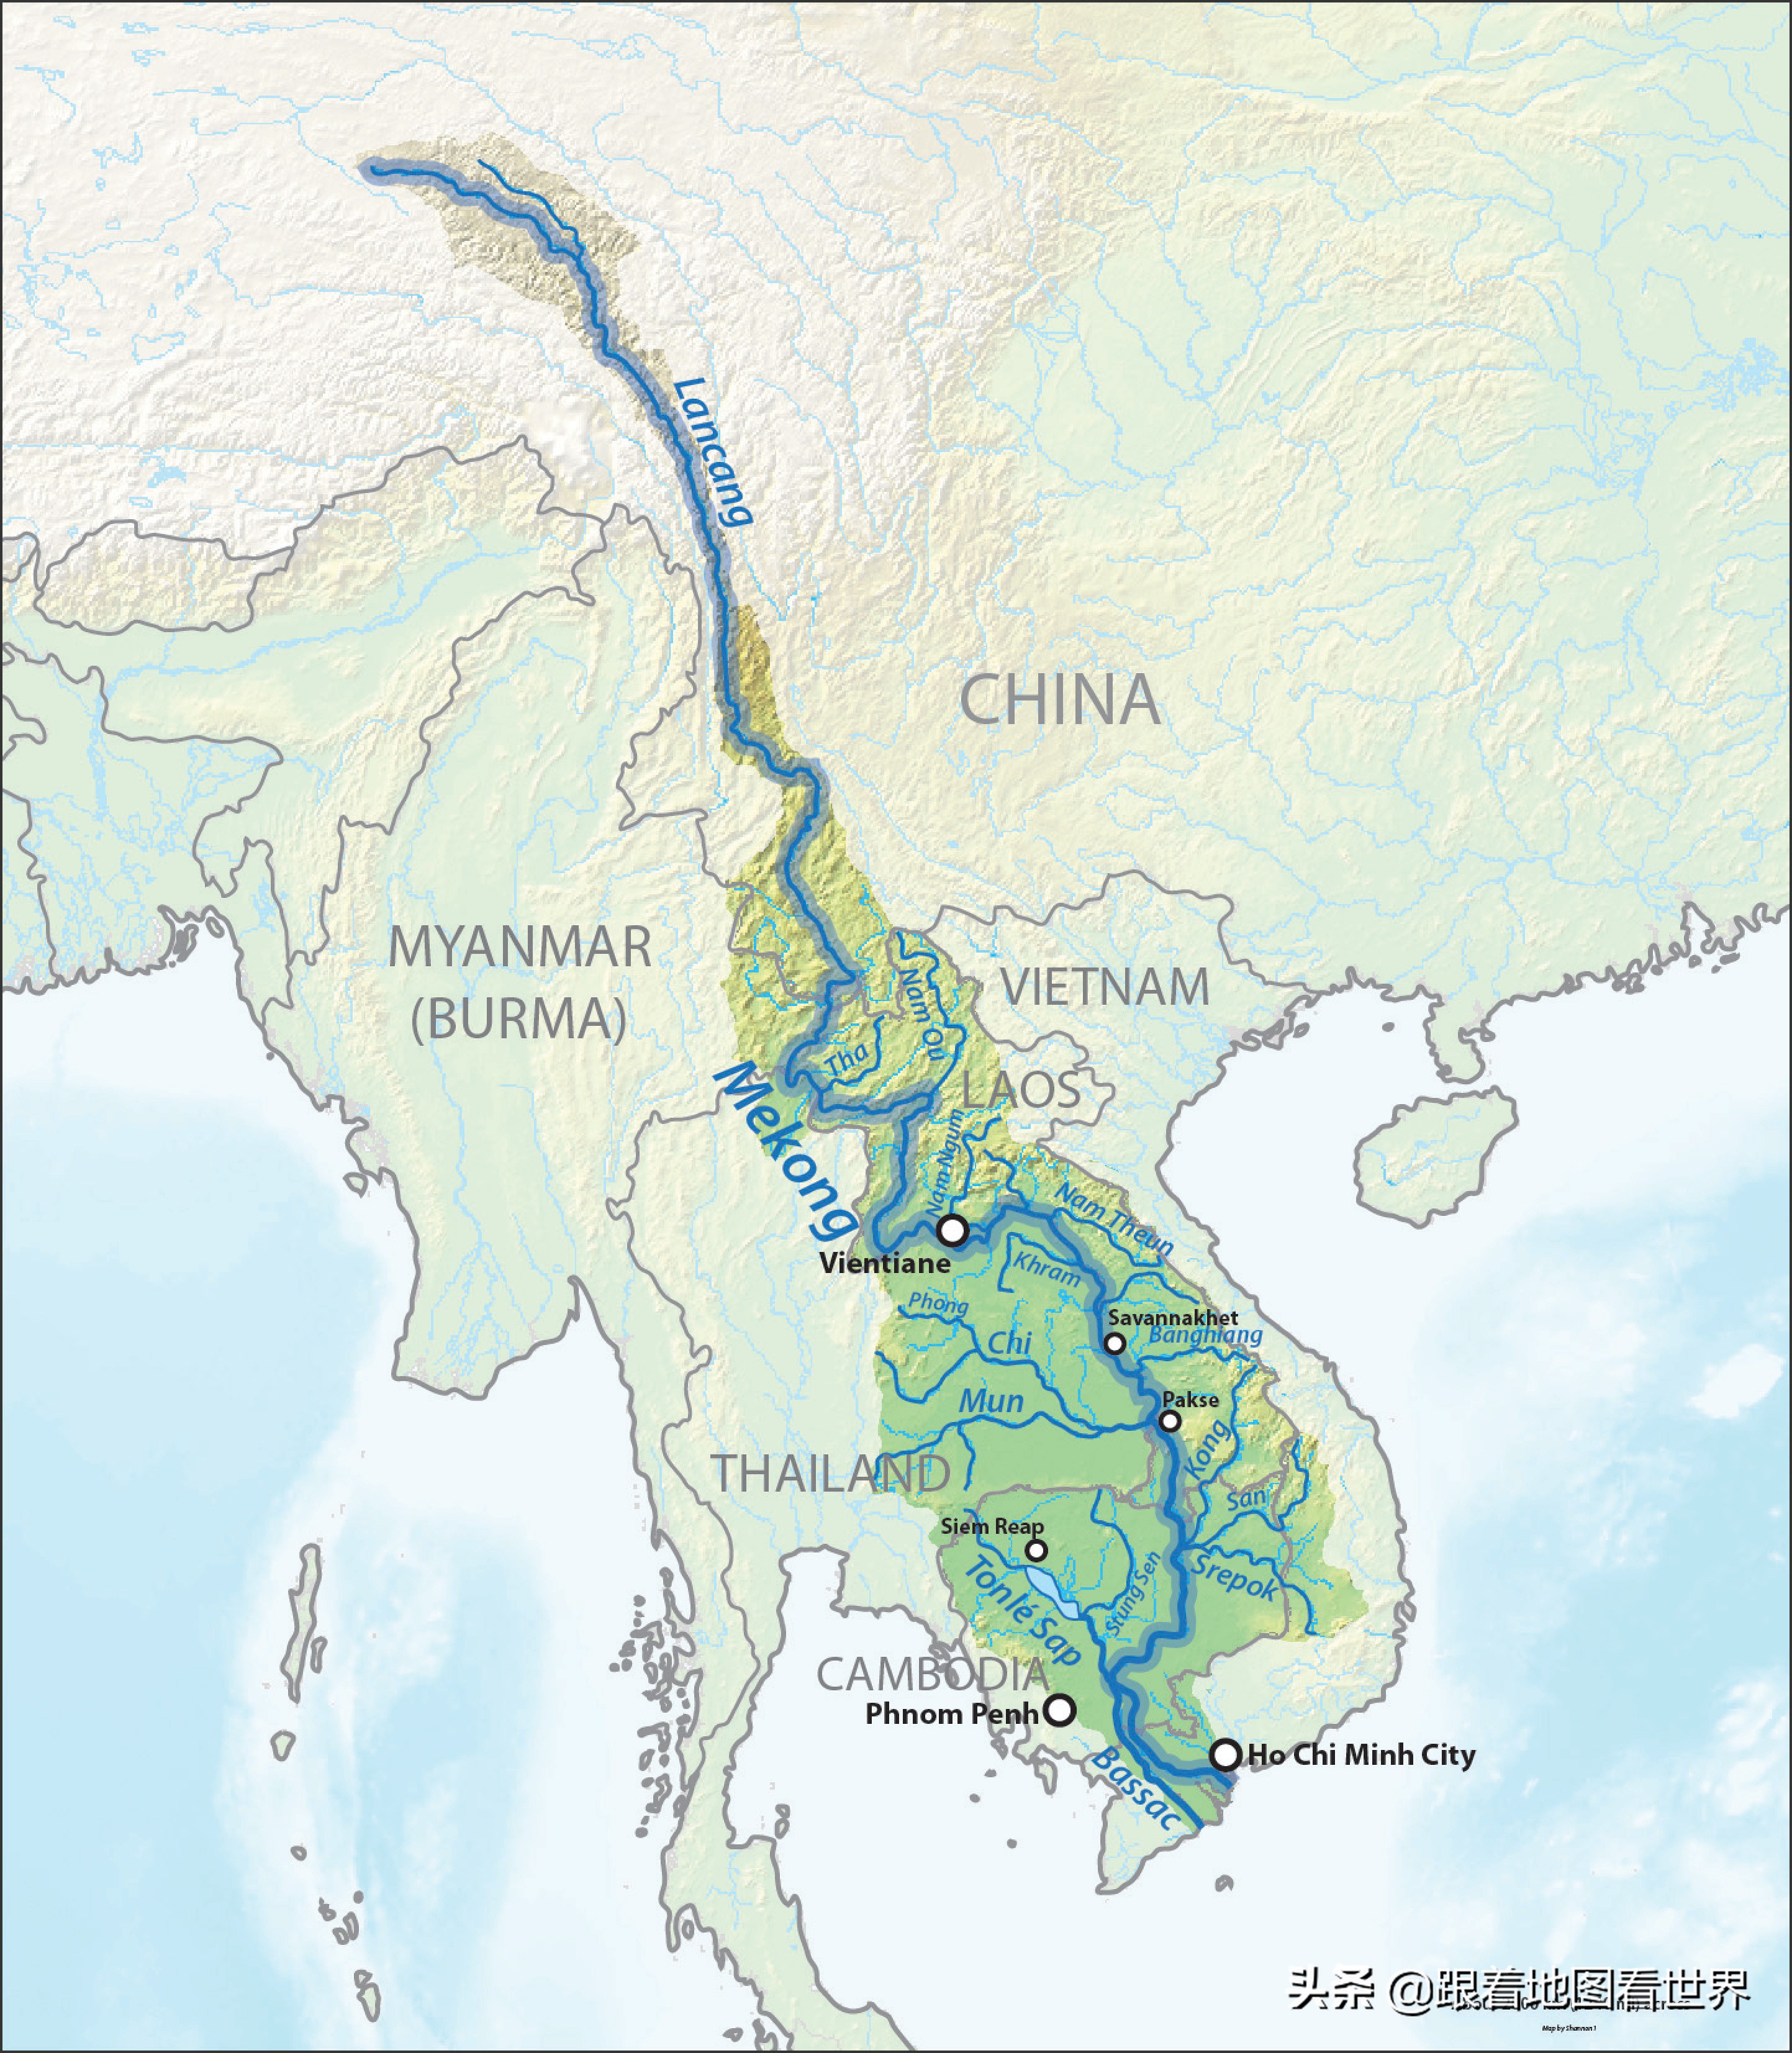 先为大家地理科普一下:东南亚的湄公河,在我国境内叫澜沧江,发源于